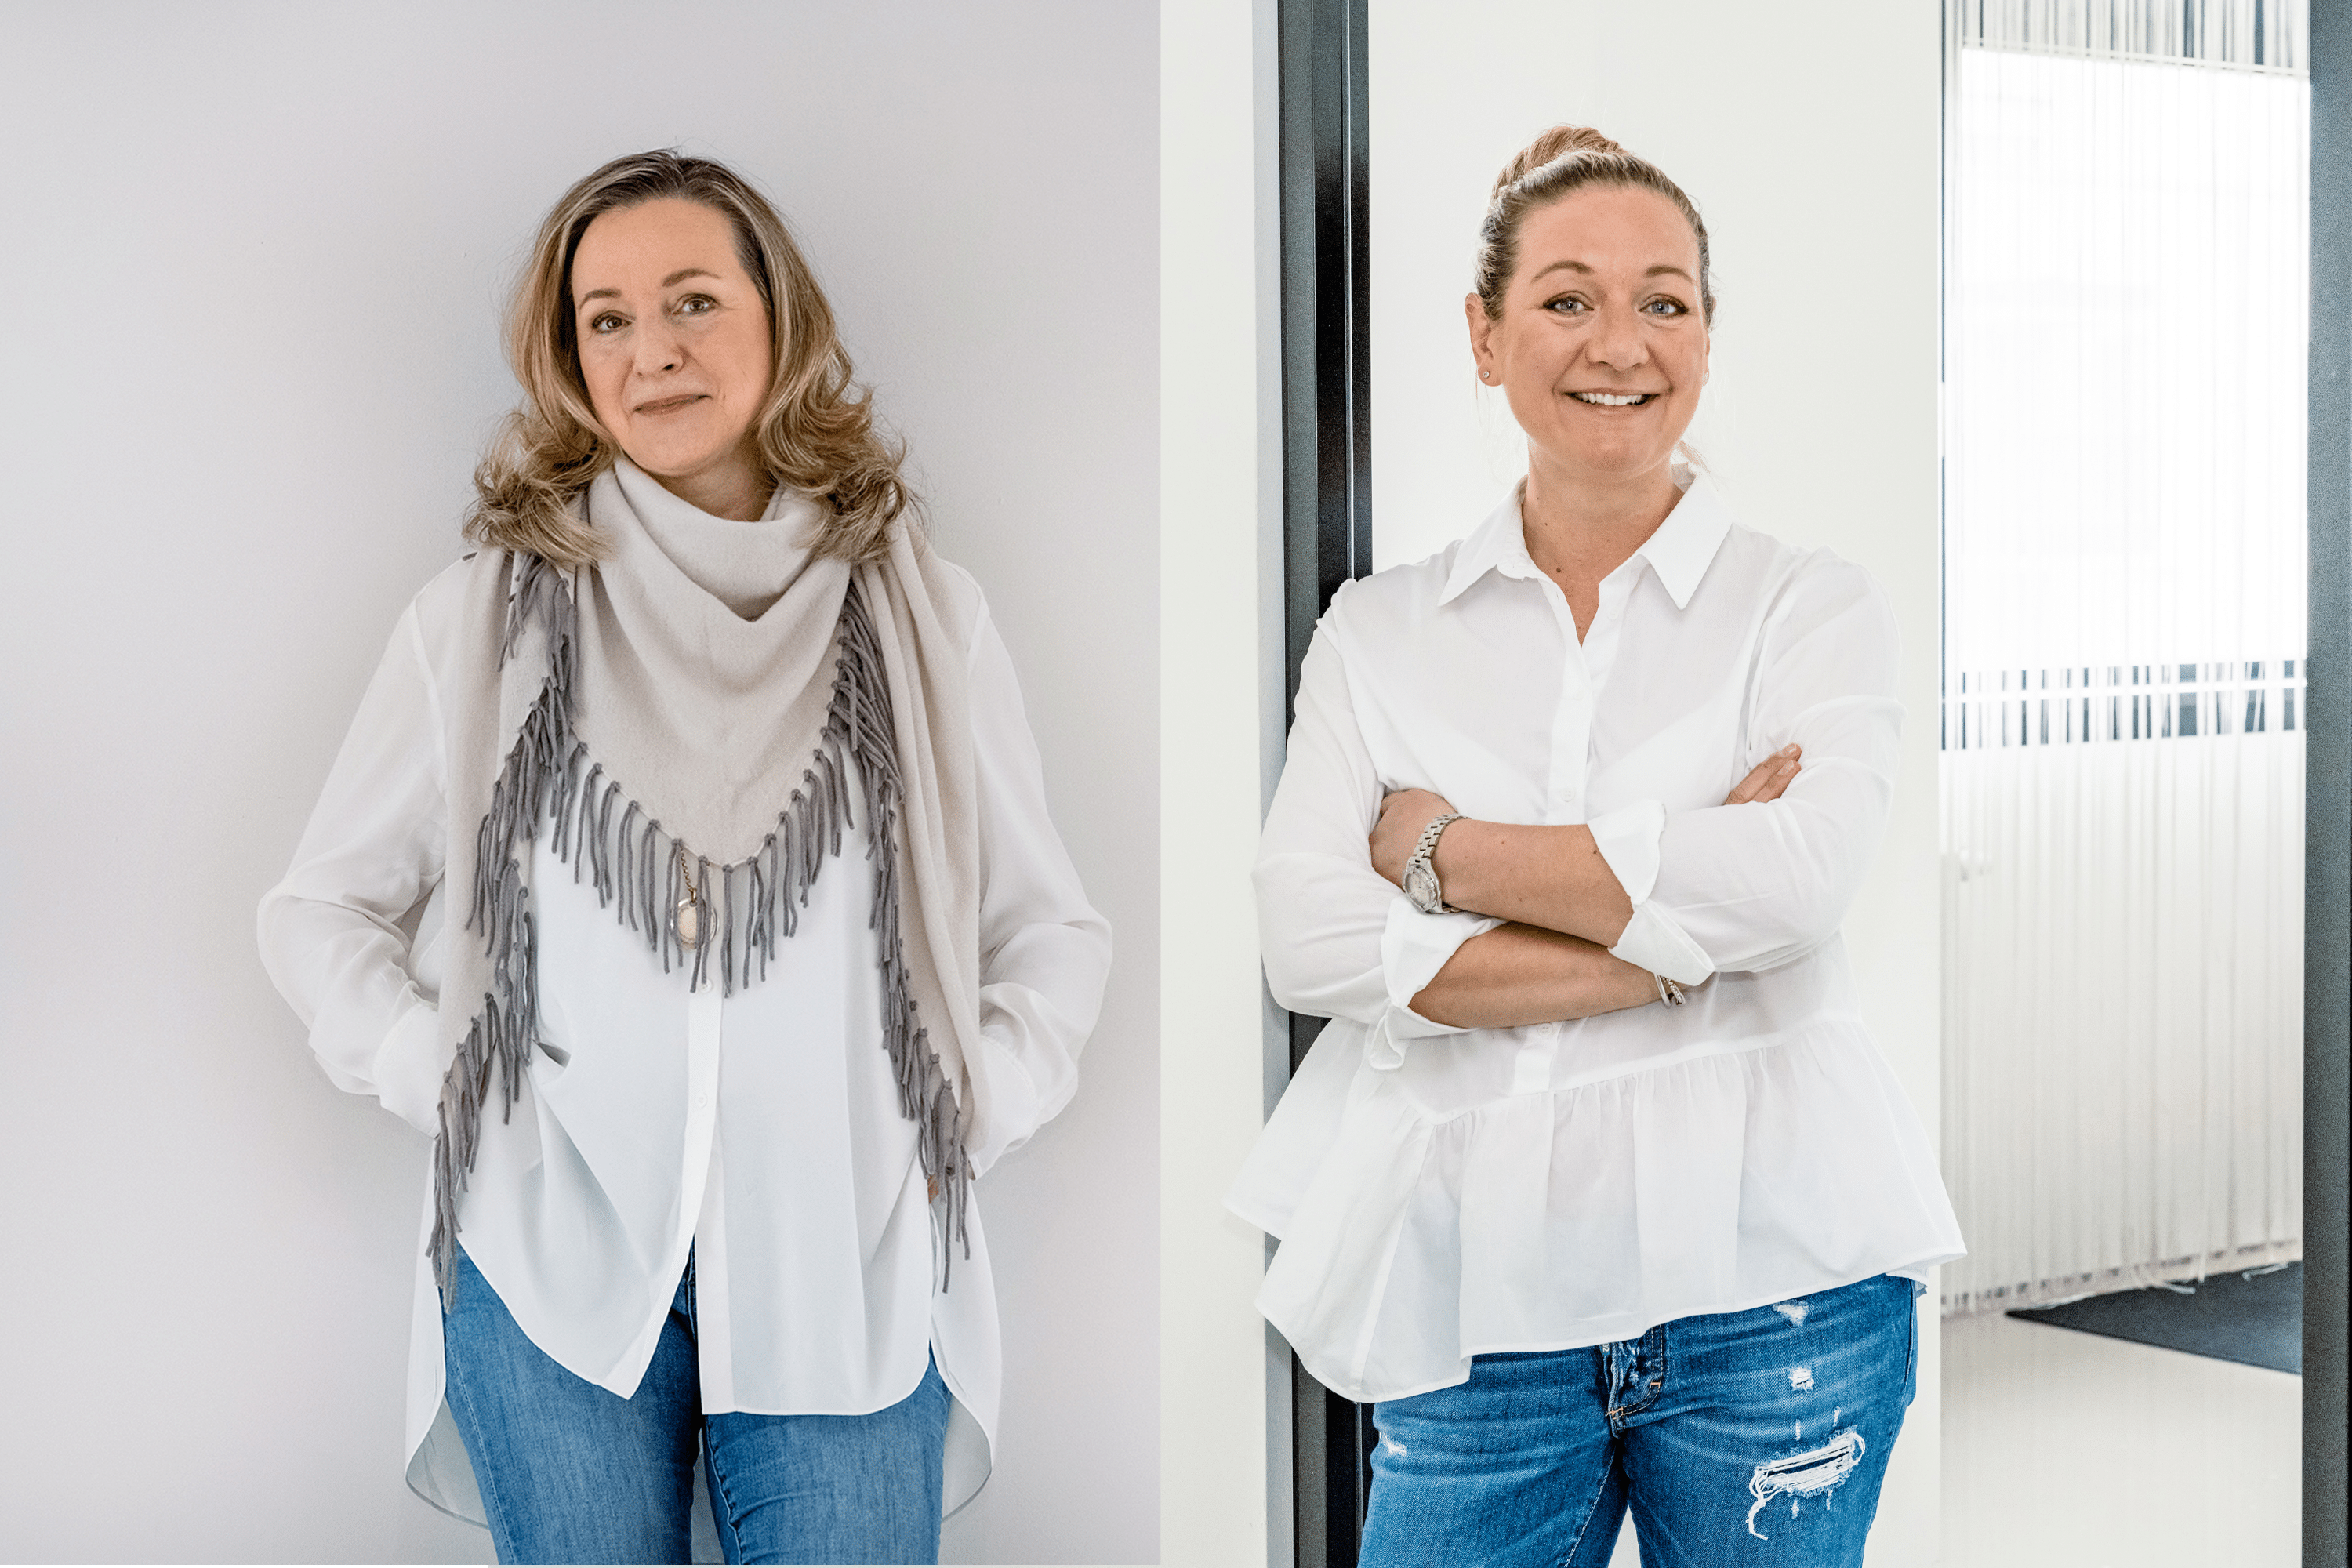 Sabine Kraus steht vor einer weißen Wand, trägt ein weißes Hemd, eine graue Fransenschal und blaue Jeans, lächelnd in die Kamera. Katharina Kraus steht vor einem Bürohintergrund, trägt ein weißes Hemd und blaue Jeans mit verschränkten Armen, lächelnd in die Kamera.